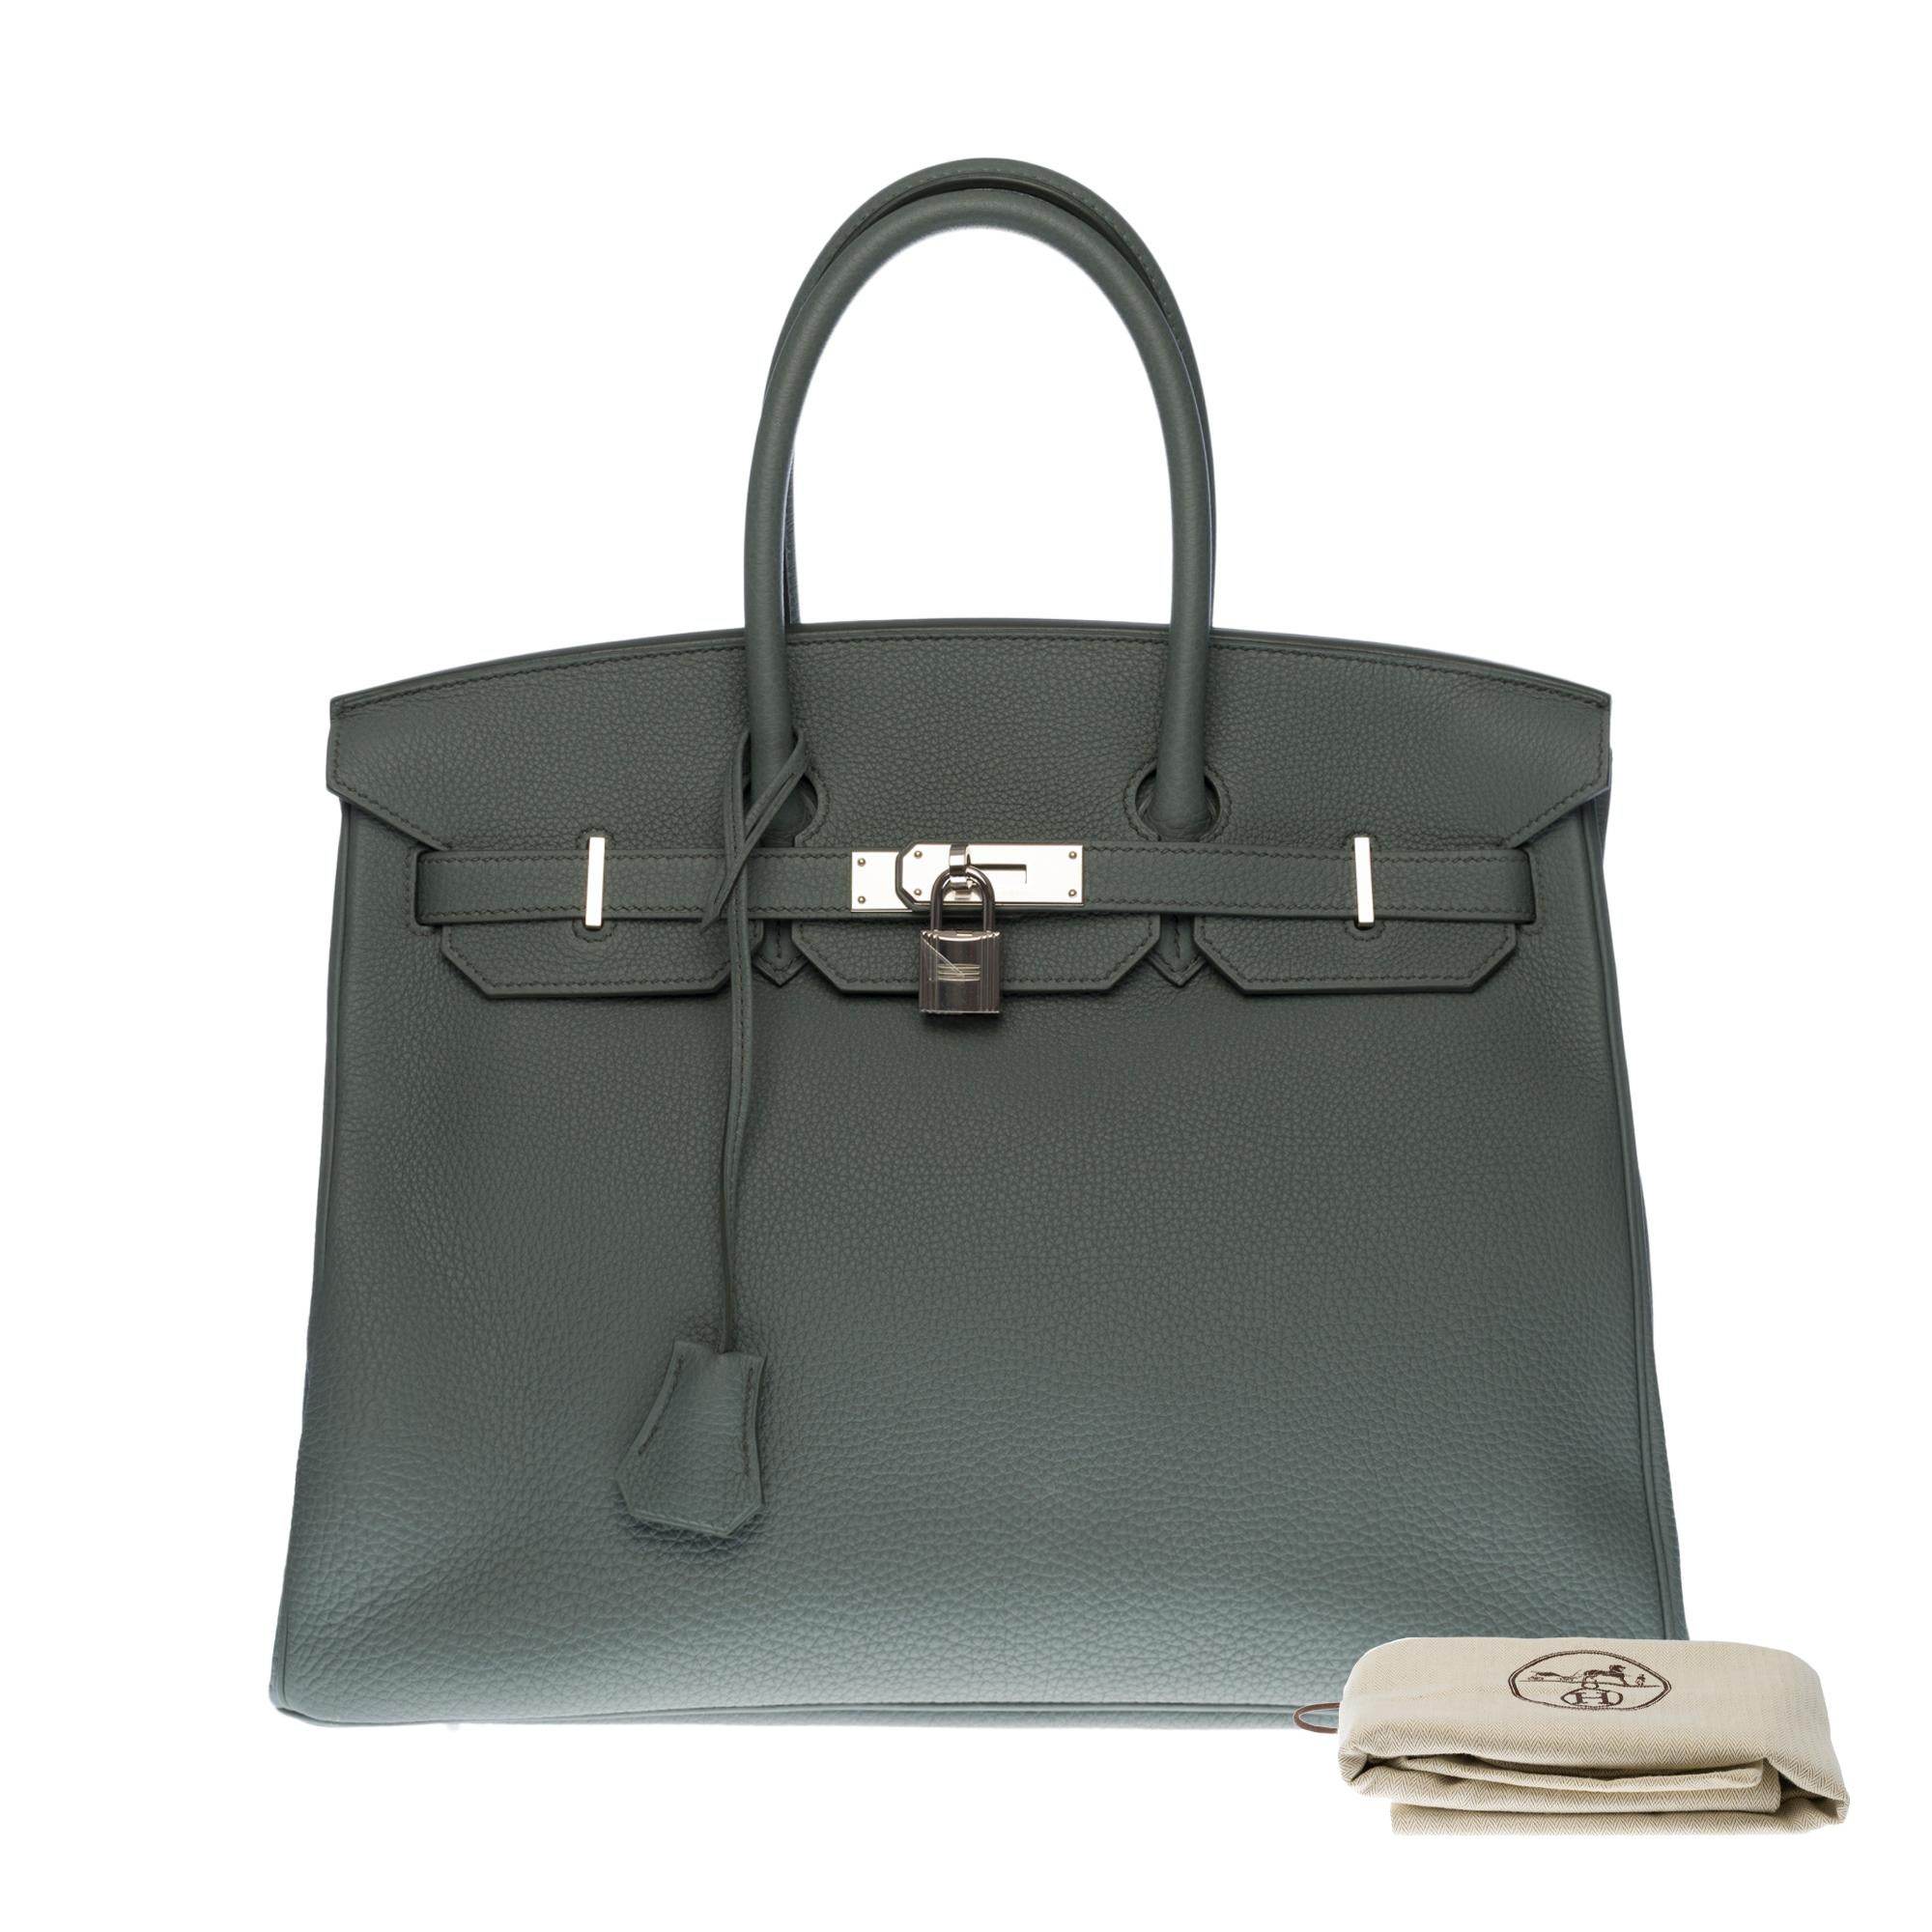 Hermès Birkin 35 handbag in Vert Amande Togo leather with silver hardware ! 3